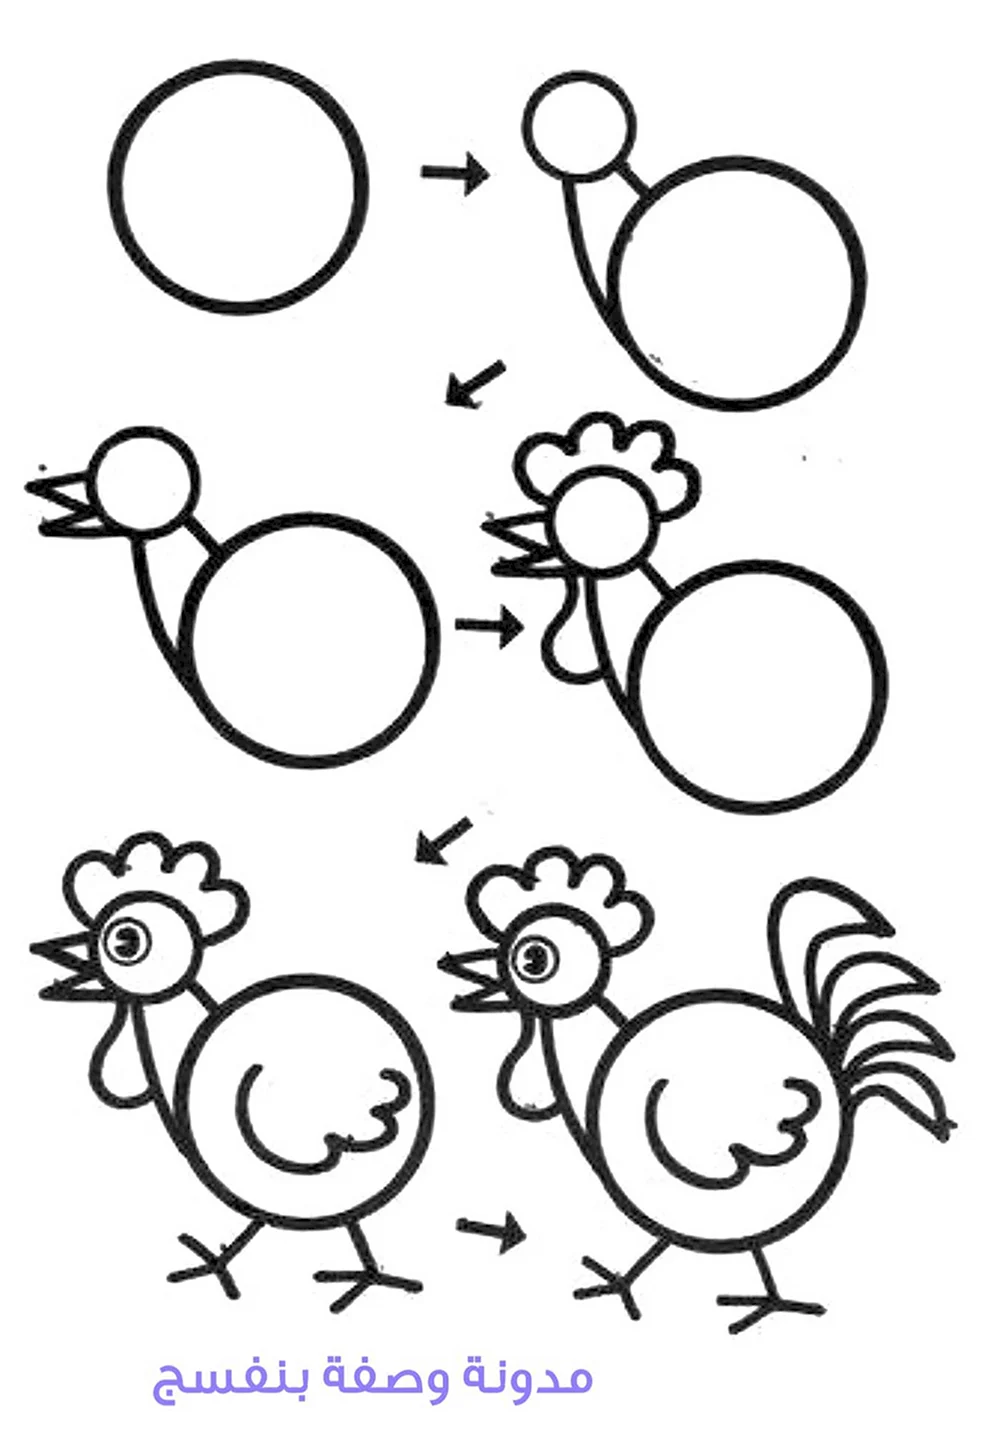 Рисование из кругов для детей